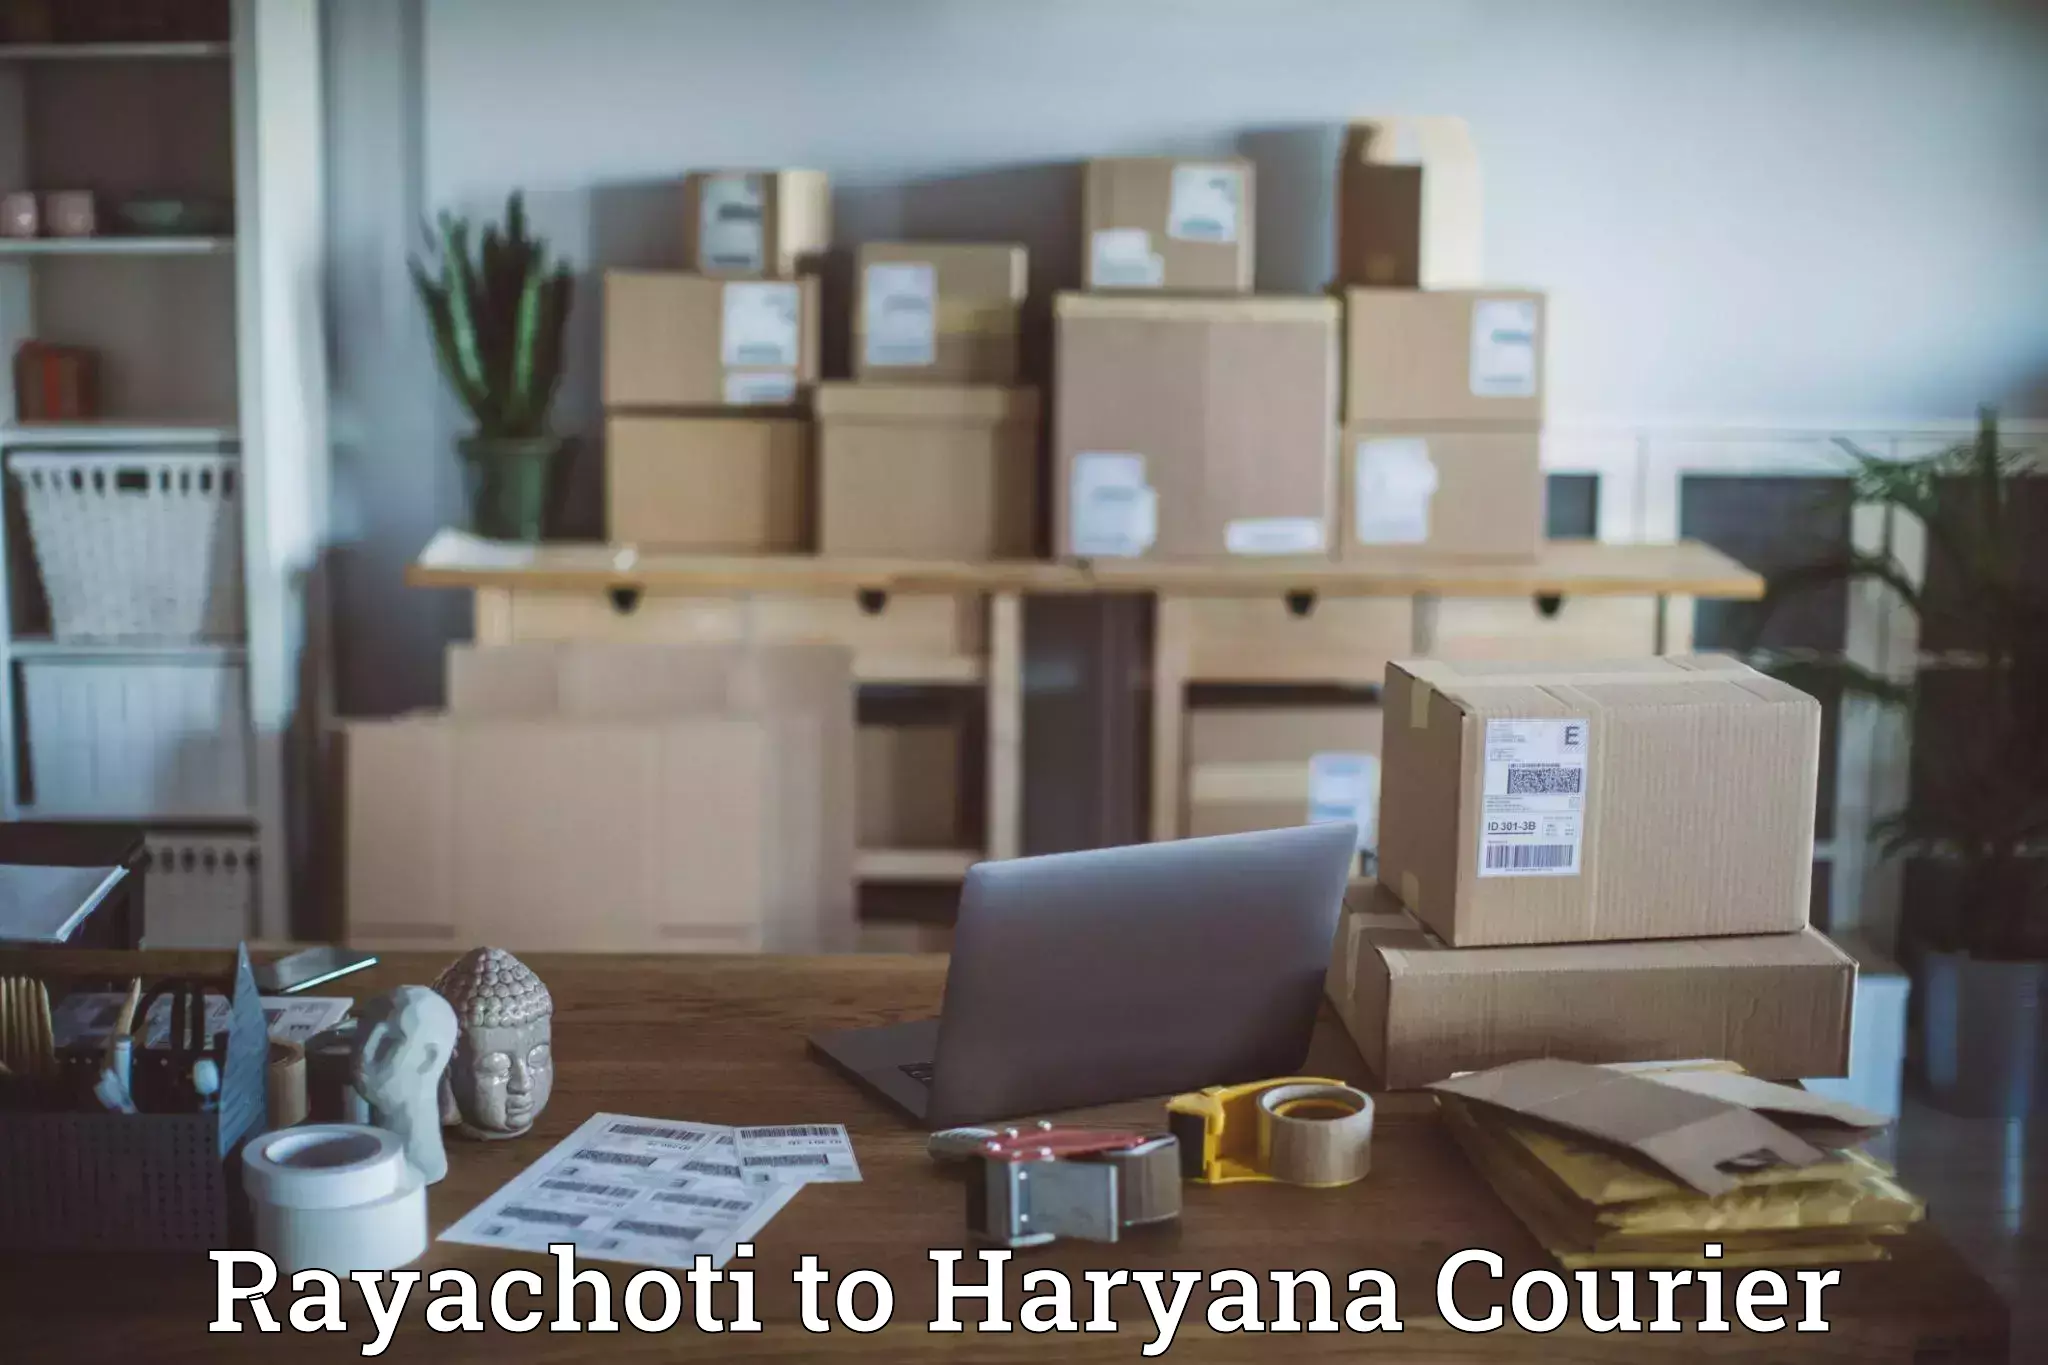 Optimized shipping routes Rayachoti to Chaudhary Charan Singh Haryana Agricultural University Hisar